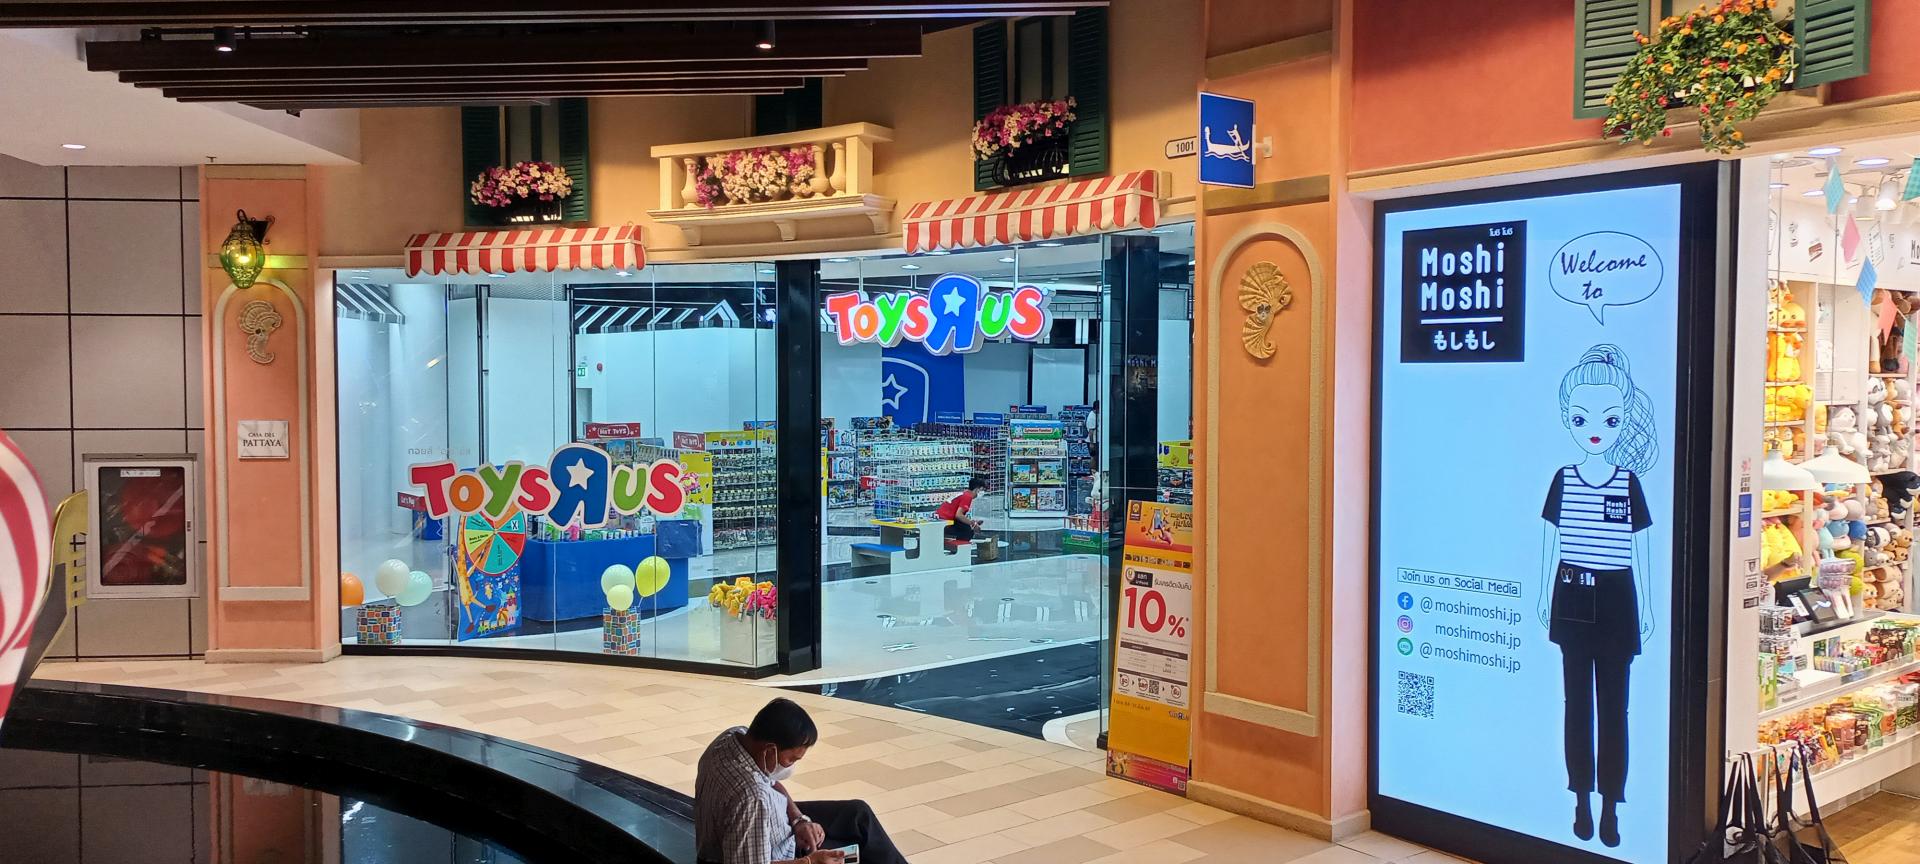 Toys 'r' us, Terminal 21 Pattaya